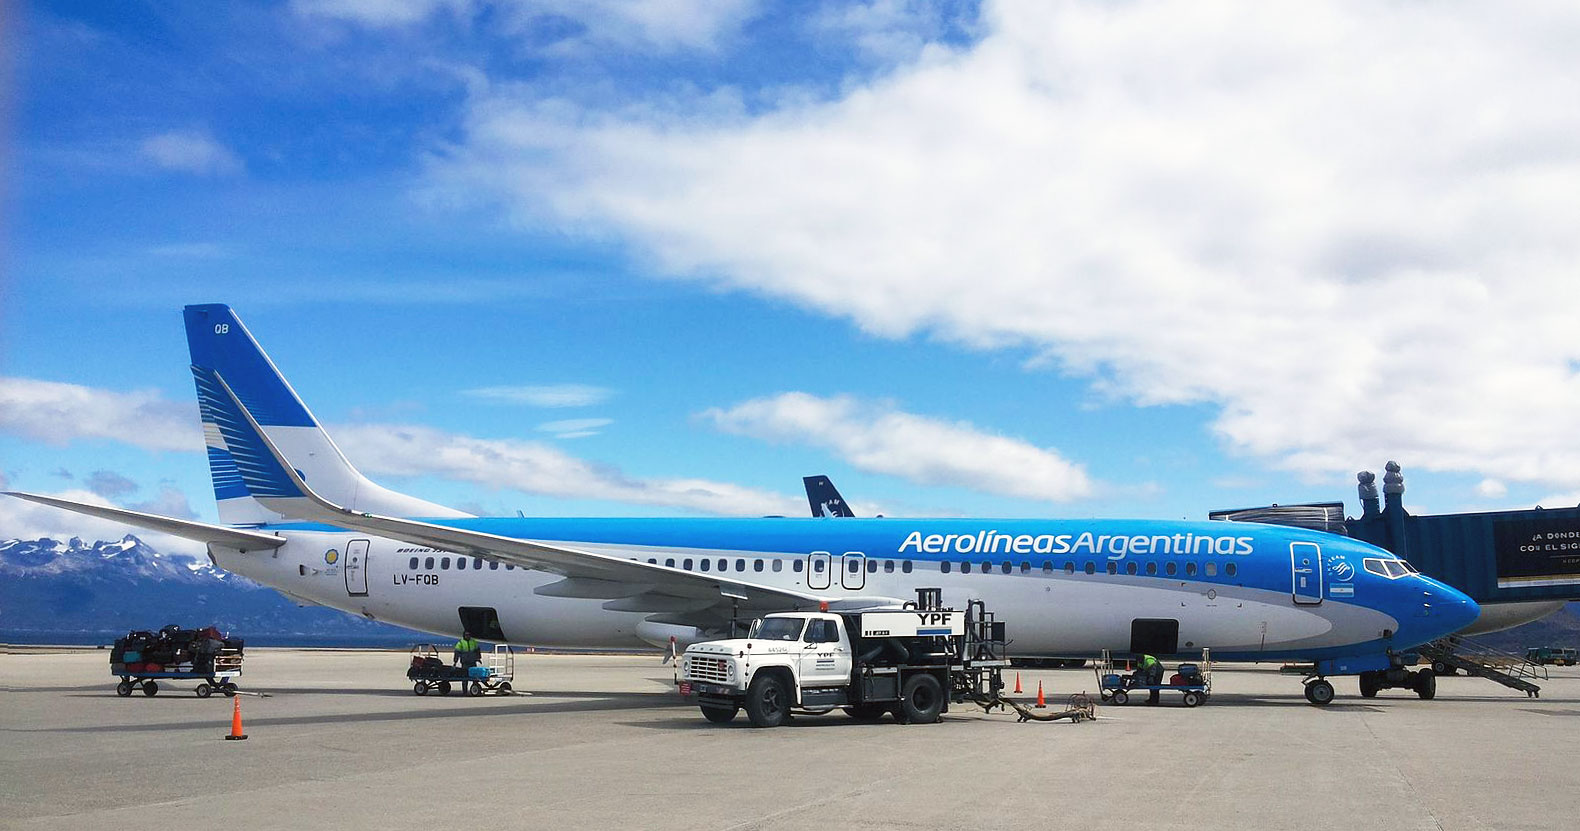 Boeing 737 plane of Aerolíneas Argentina Airline.